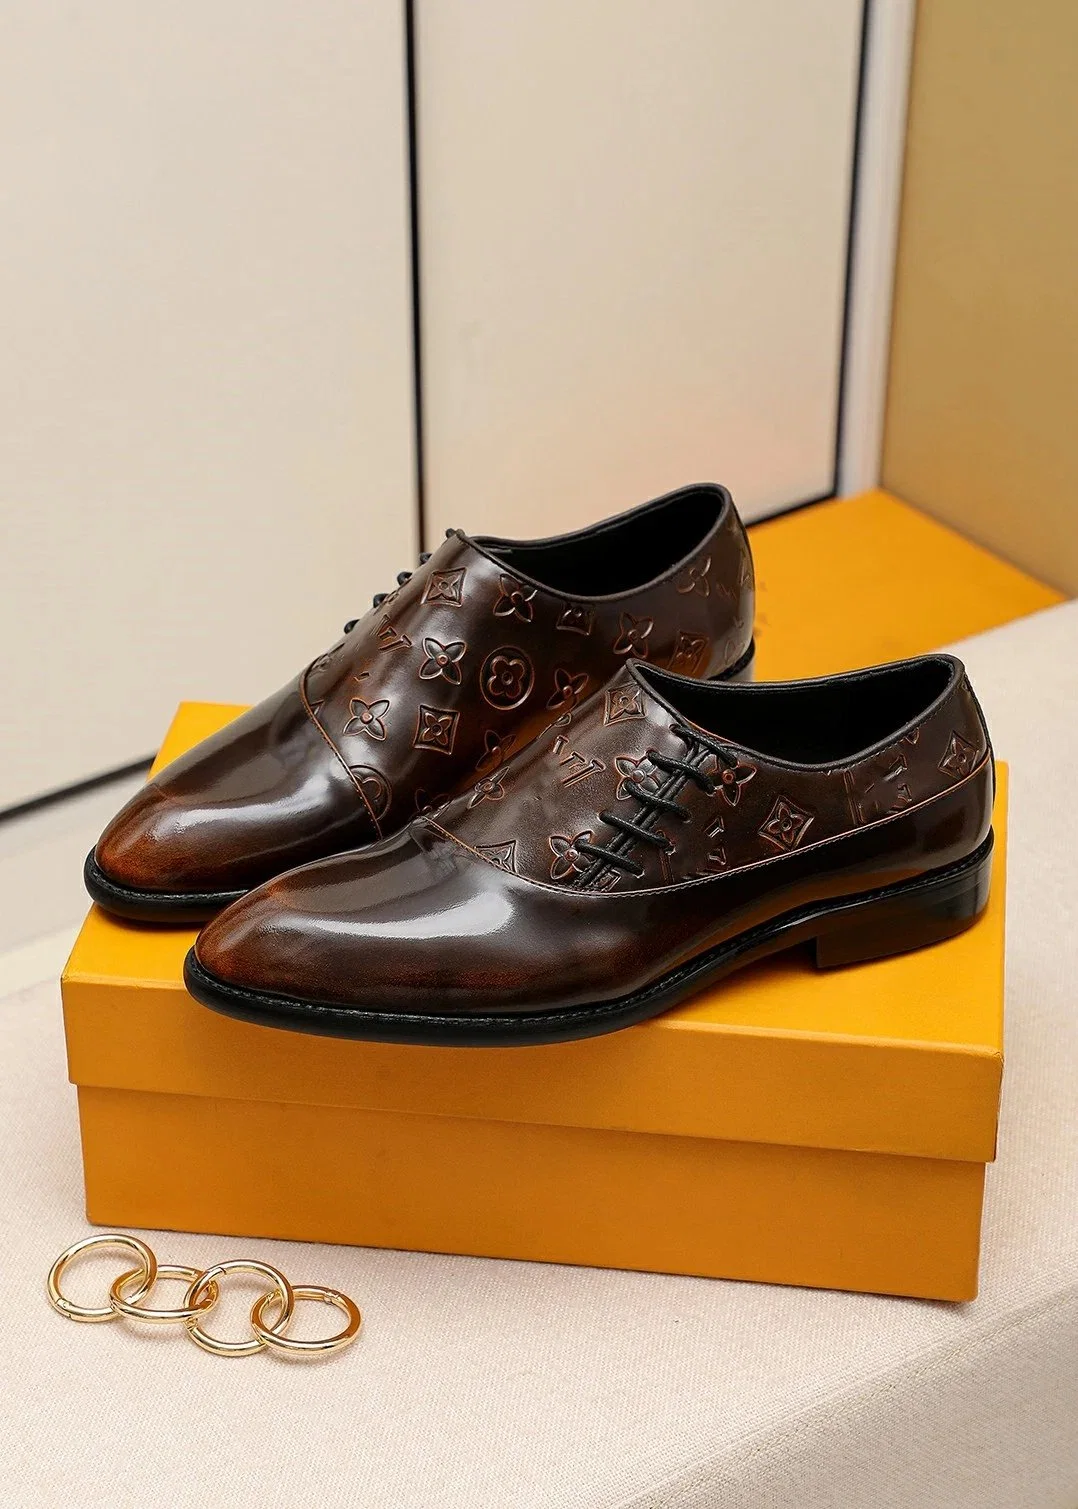 Atacado Balenciag'a's Shoes Designer Business Couro formal Sapatos Gucc'i's. Sapatilhas